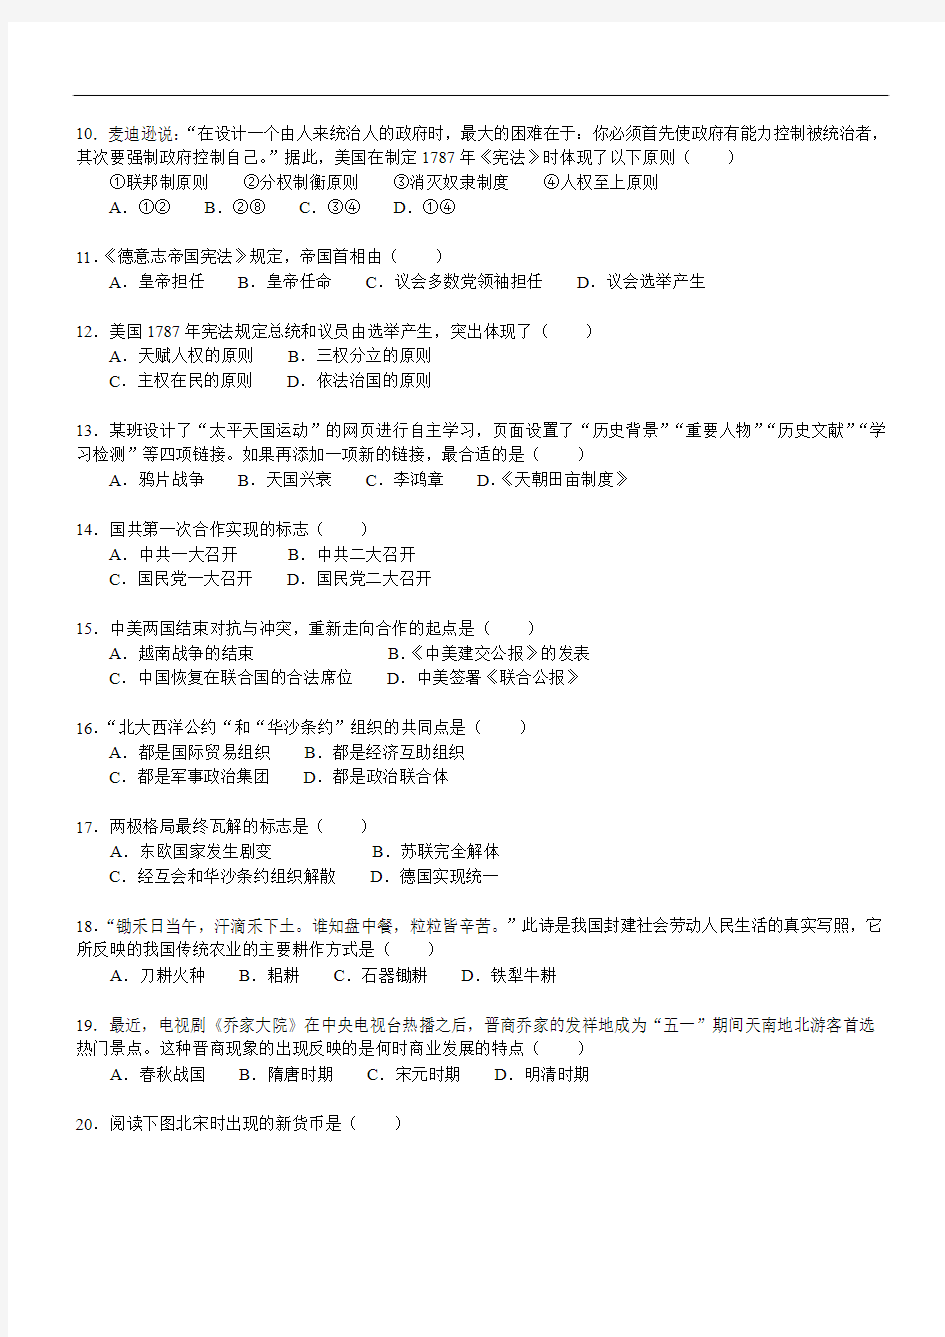 2009年北京市高中会考试卷——历史